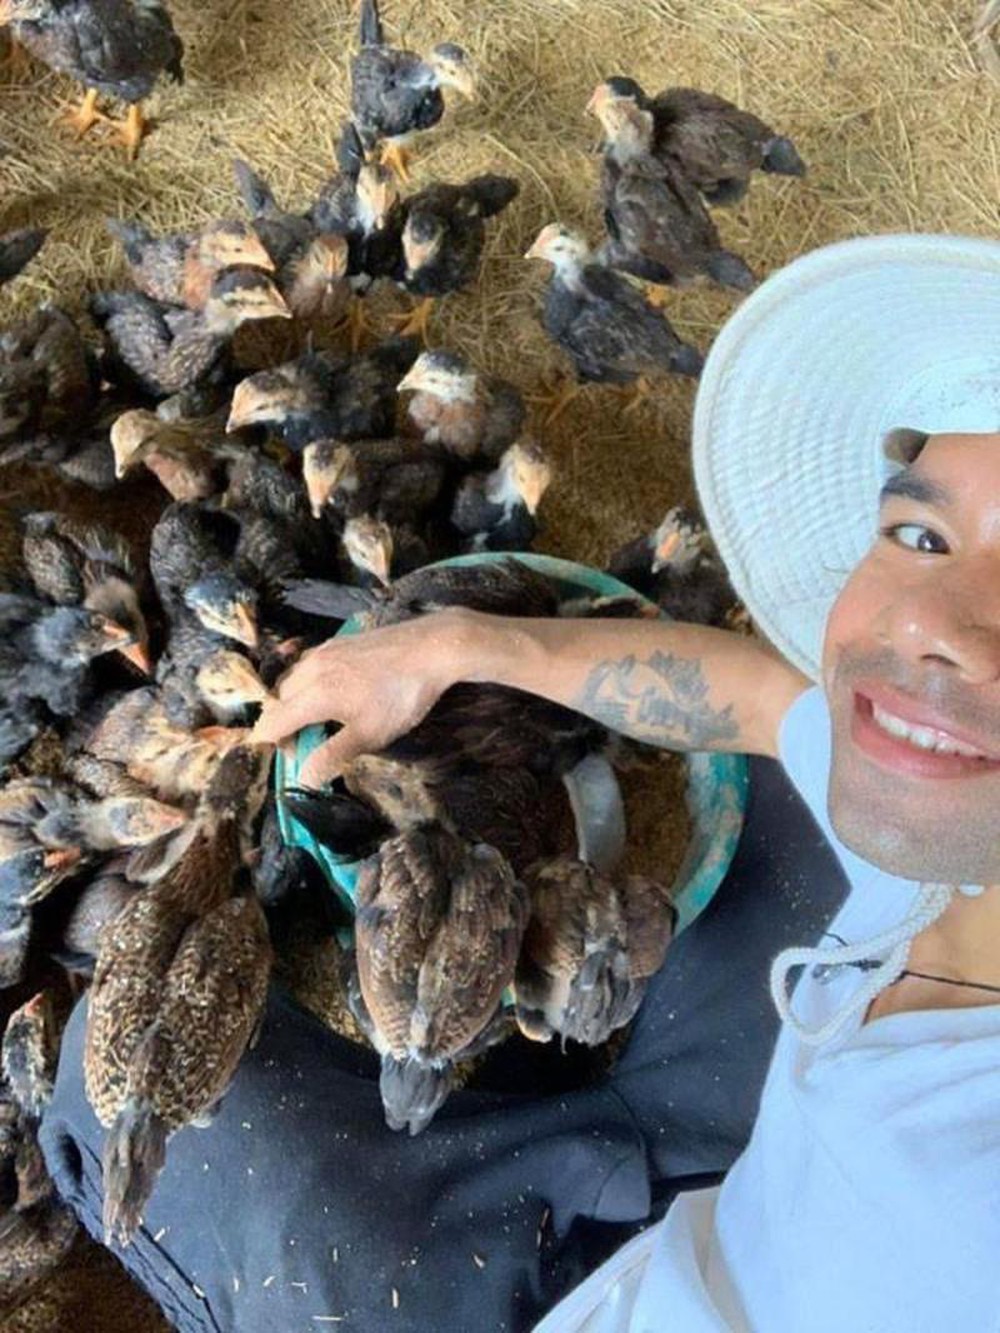  
Yasuy hiện tại rất hứng thú với công việc nuôi gà, chăn lợn. Ảnh: FB Trần Phan Huy Khánh